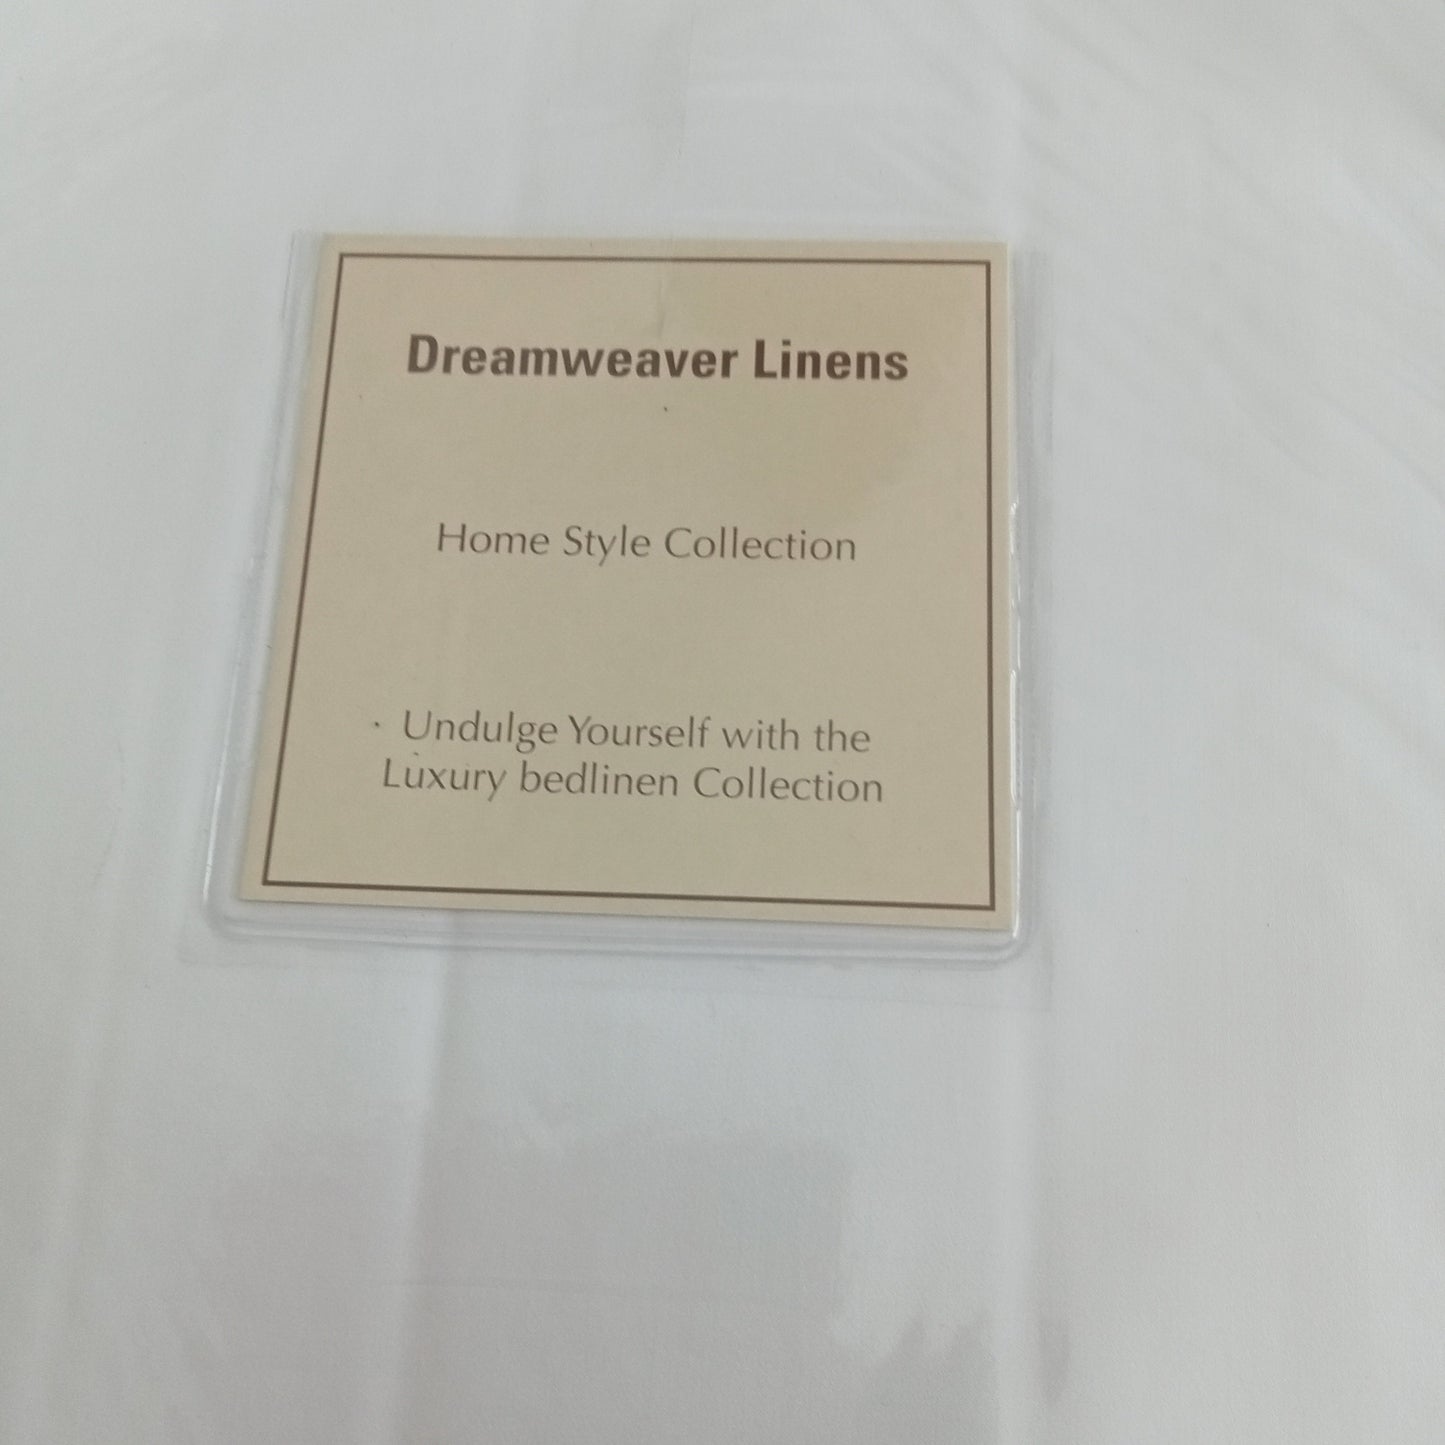 Duvet Cover by Dreamweaver Linens